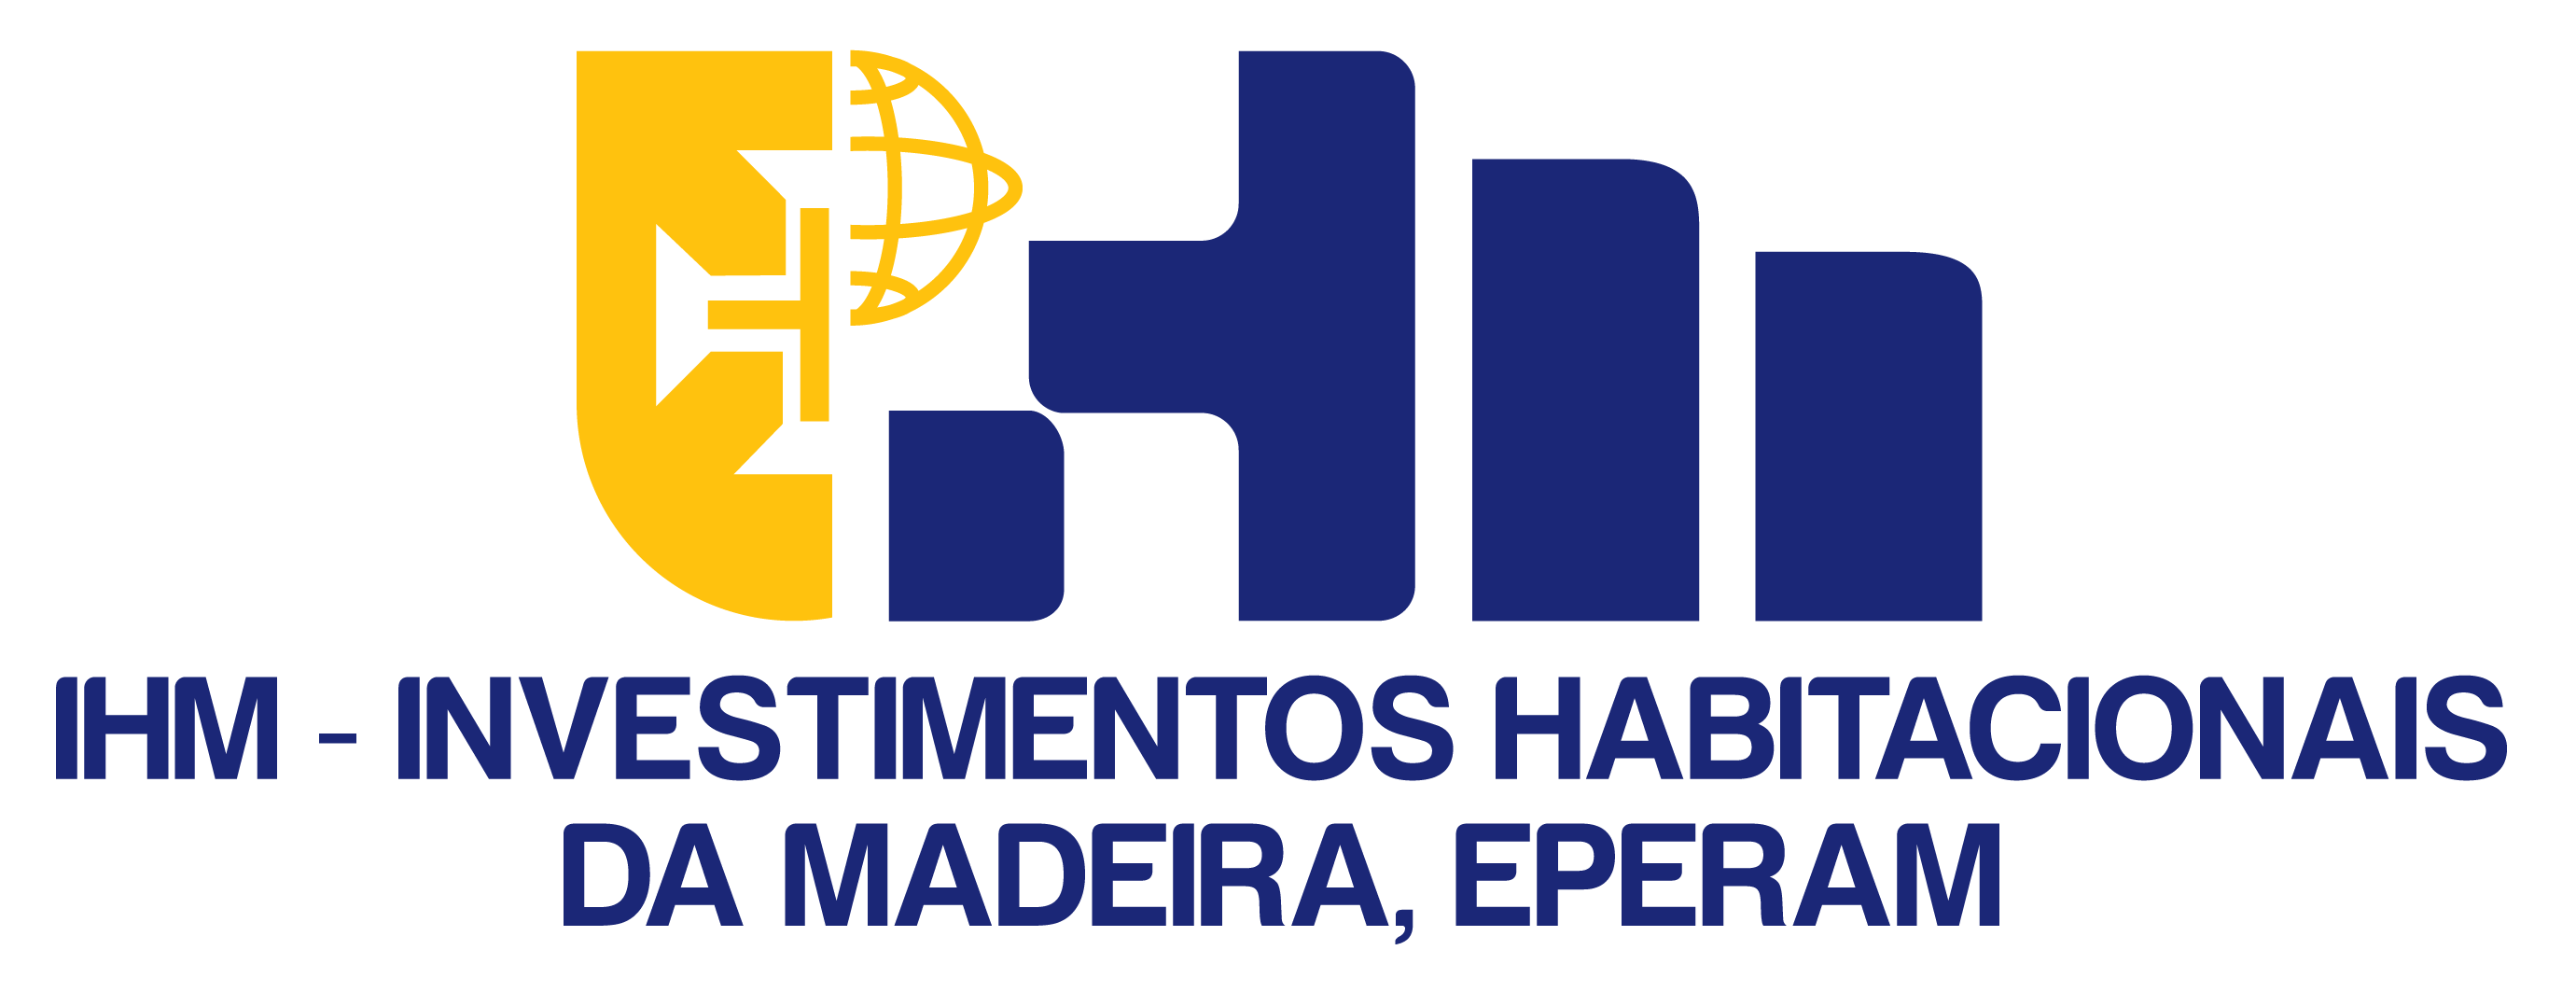 logo IHM cor